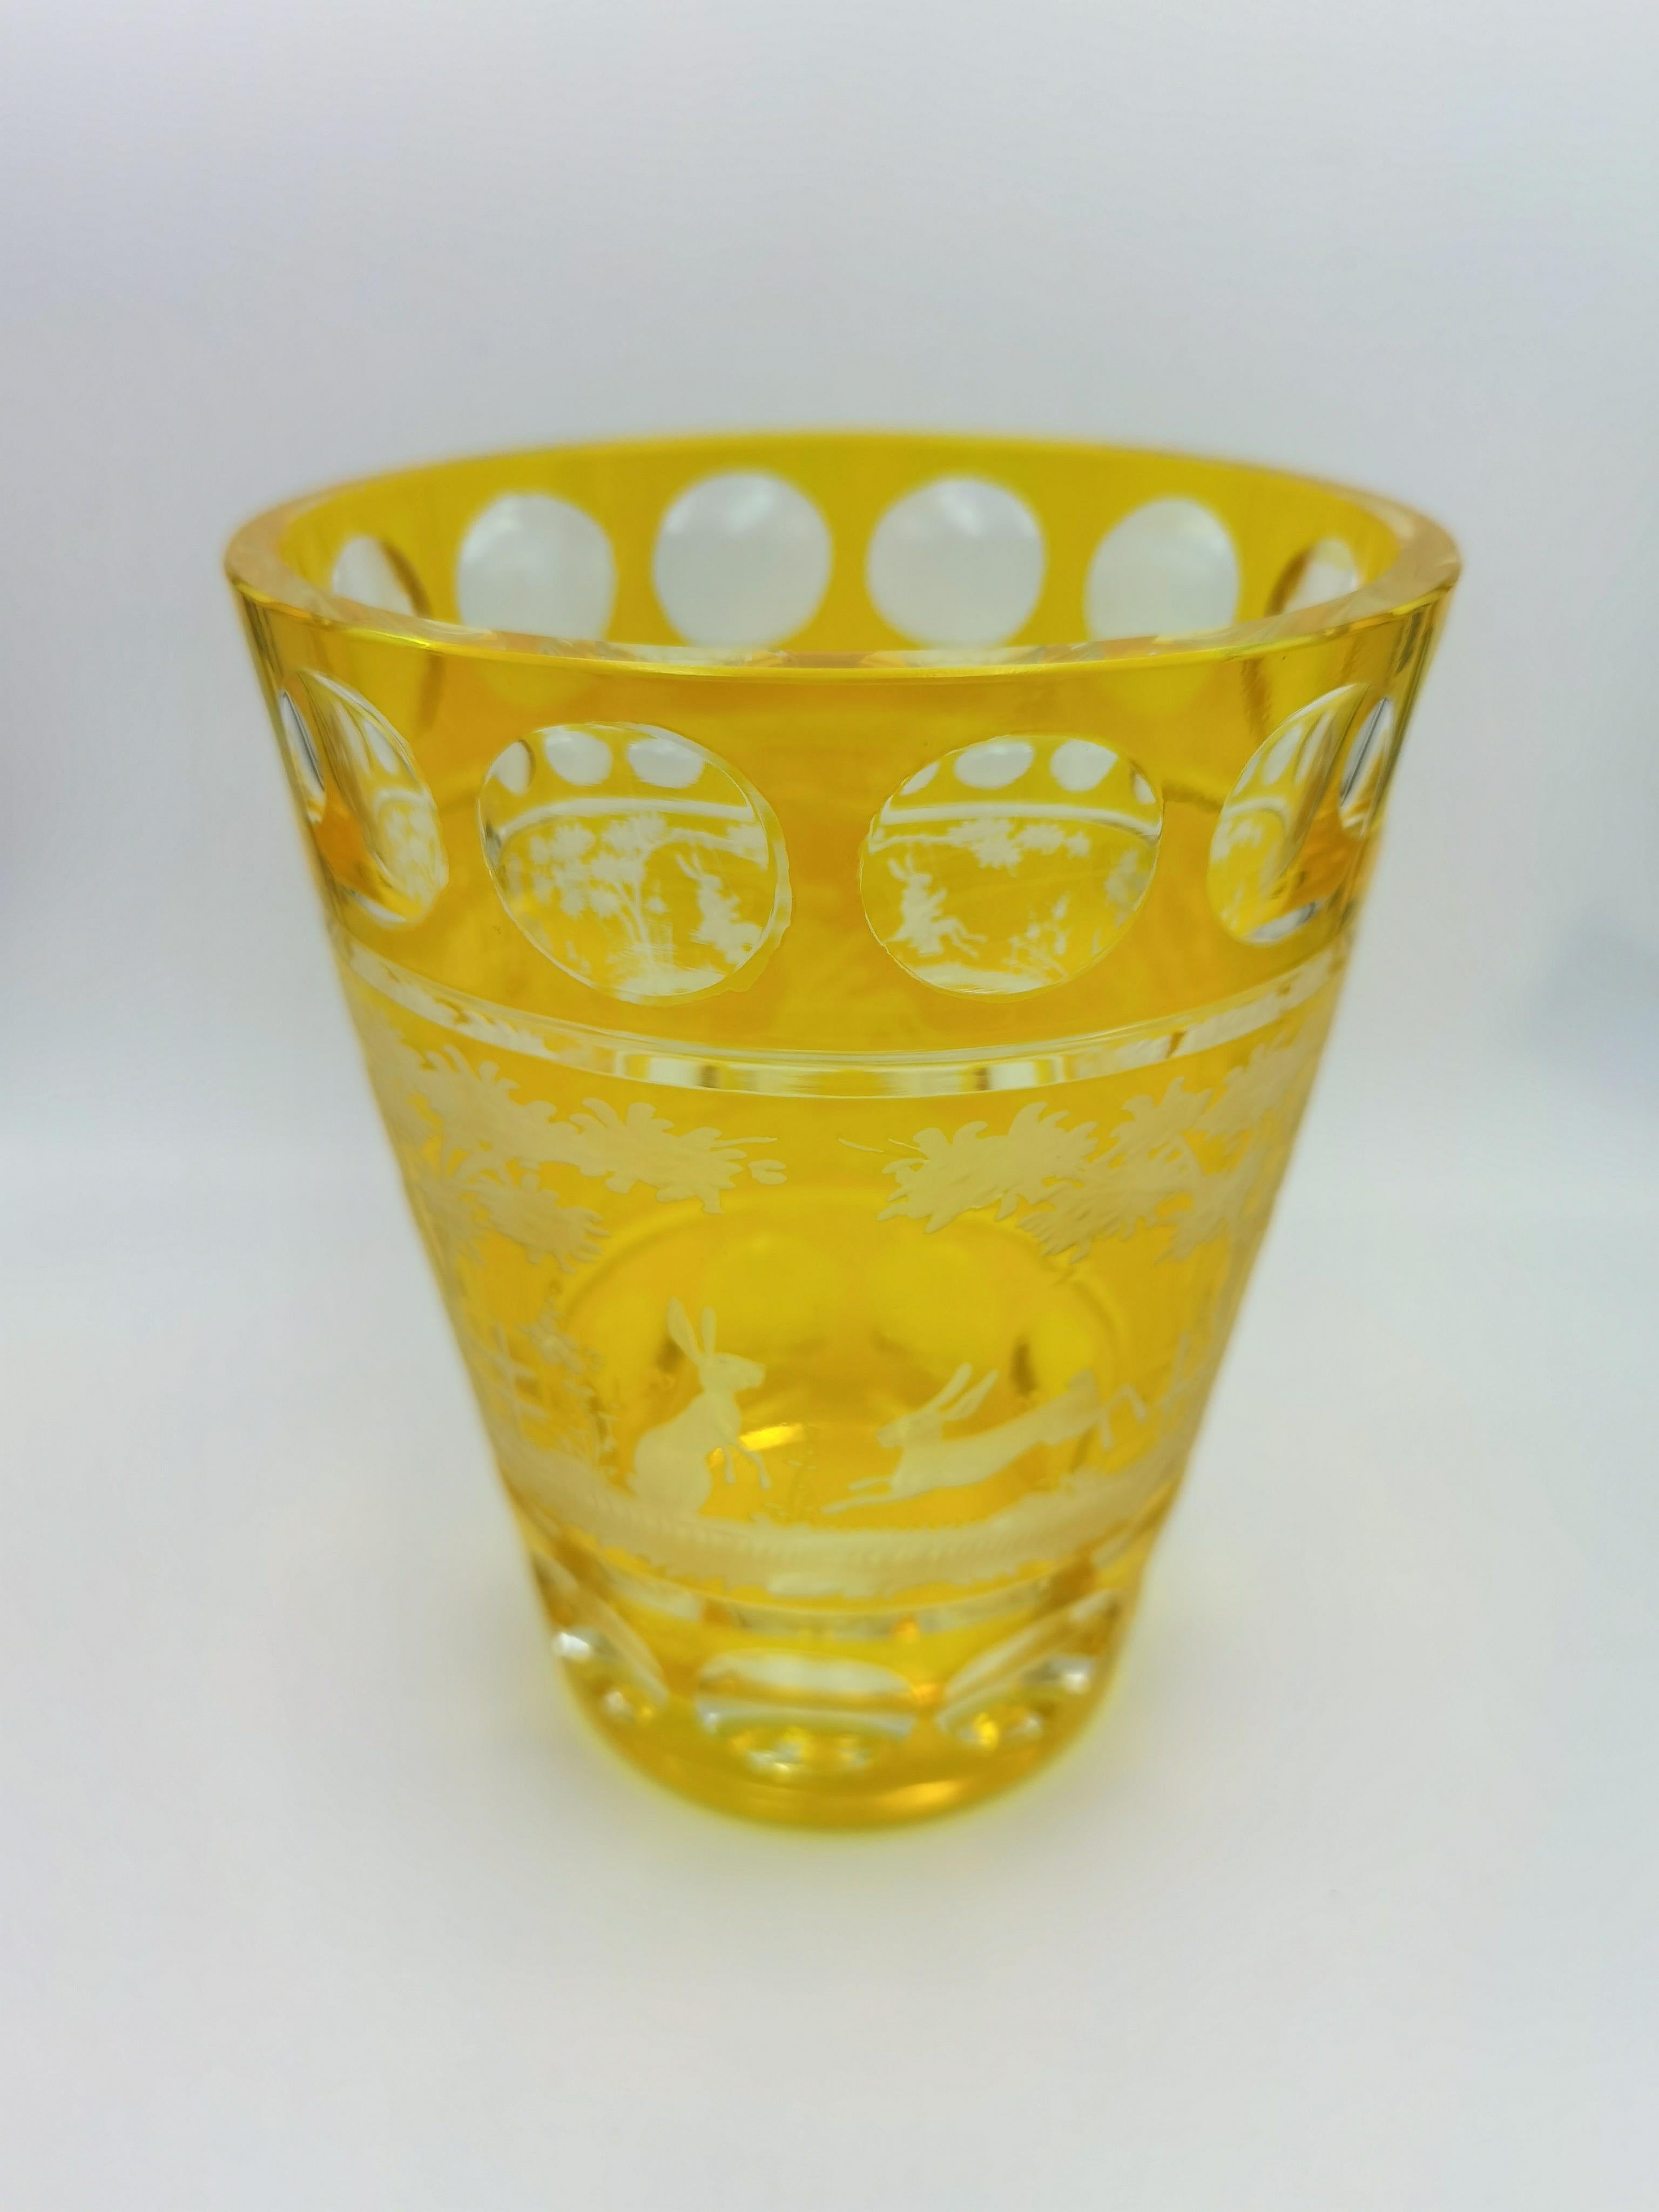 Vase aus mundgeblasenem Kristall in gelbem Glas mit Osterdekor im Landhausstil. Die Blätter, der Hase und die Bäume werden von Glaskünstlern in Bayern/Deutschland handgraviert. Das hier gezeigte Glas ist gelb und kann in verschiedenen Farben wie